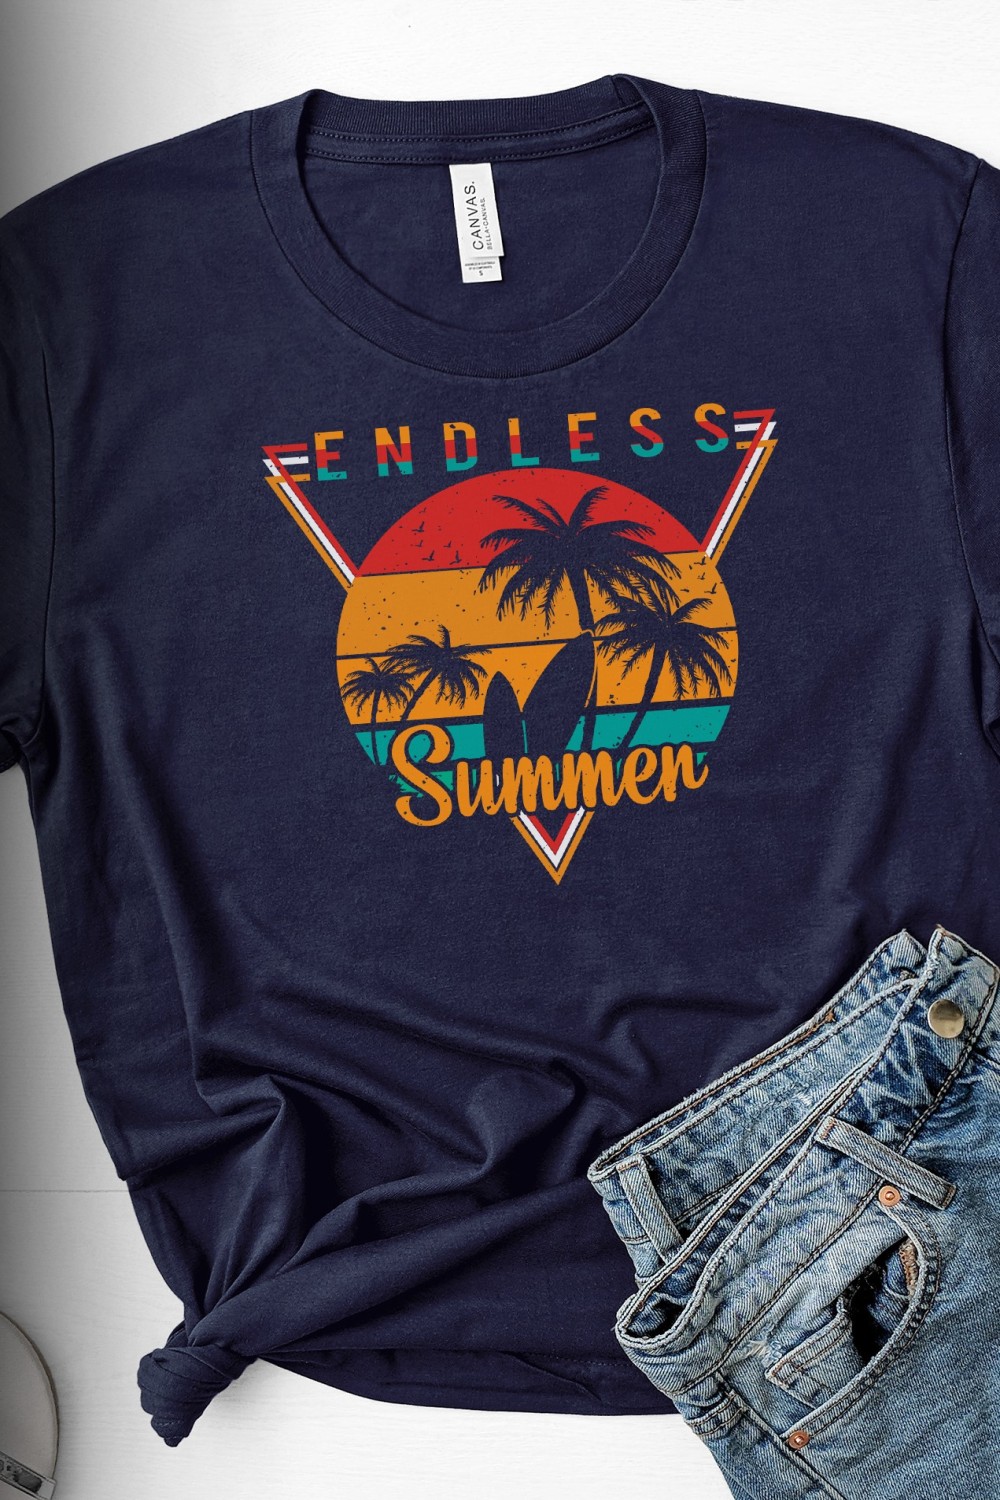 endless summer t shirt design pin 1 454